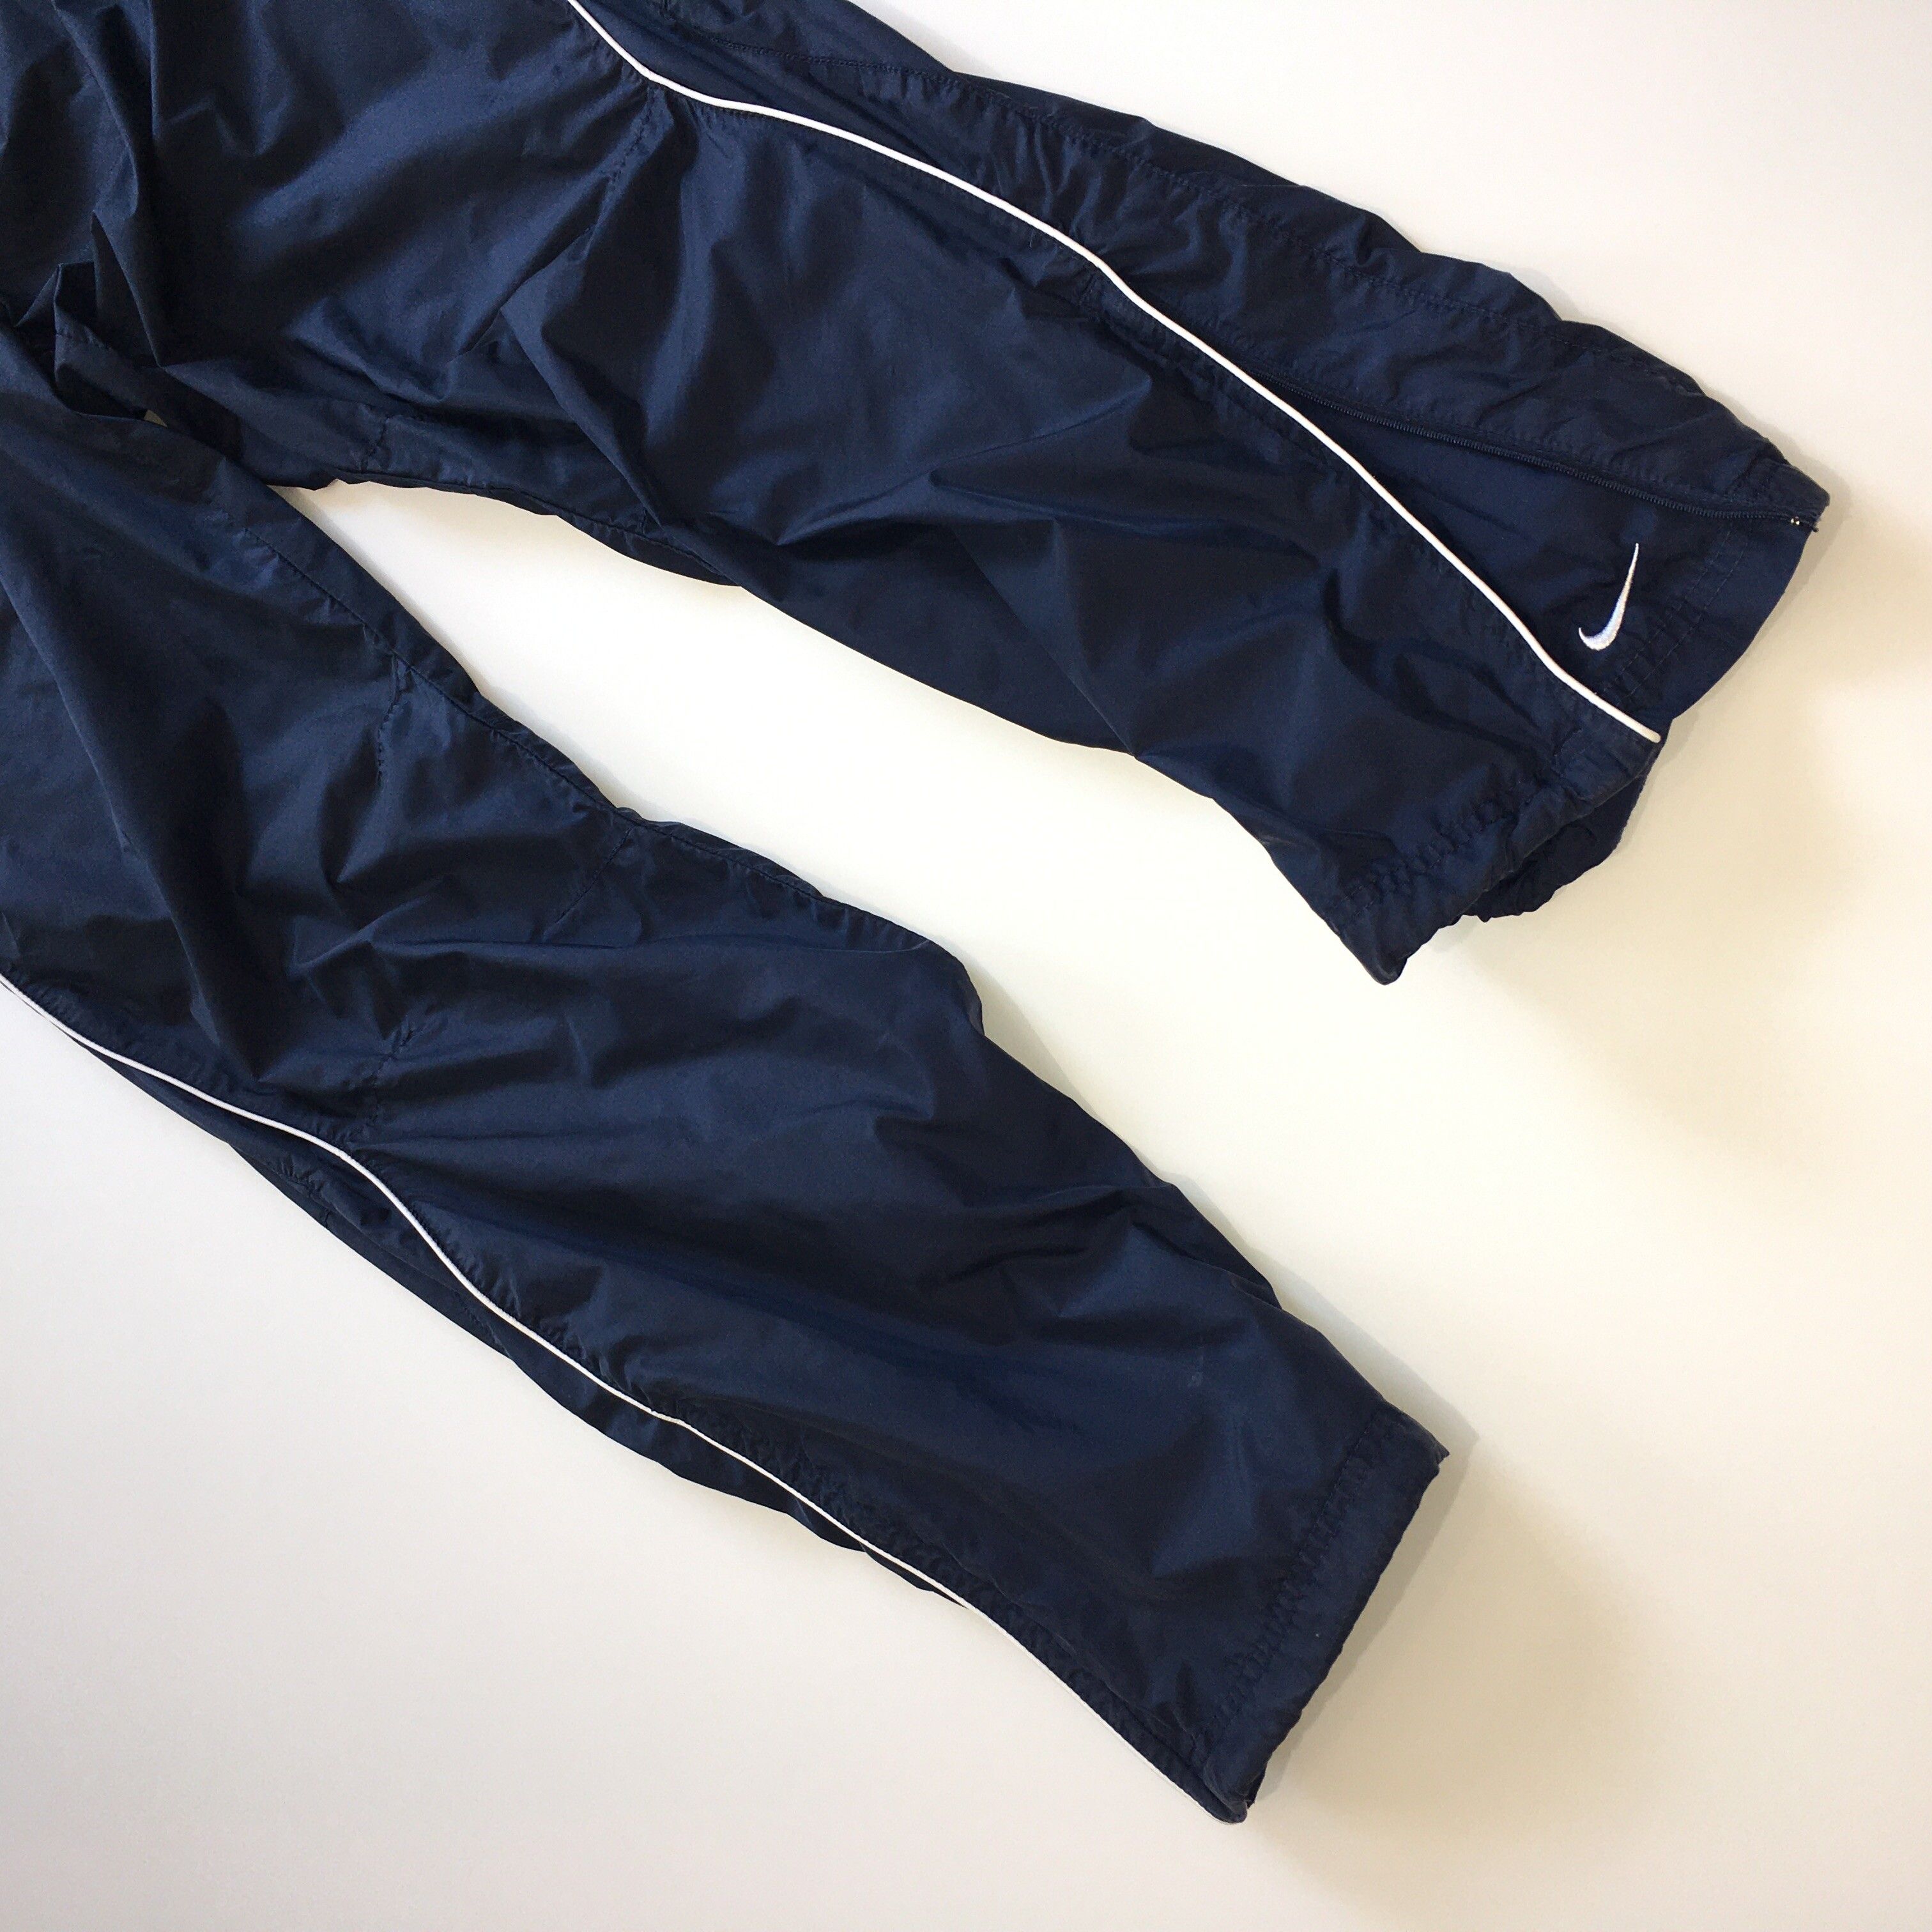 Nike Vintage Y2K Nike Nylon Navy Track Pants Joggers Size L Size US 34 / EU 50 - 5 Thumbnail